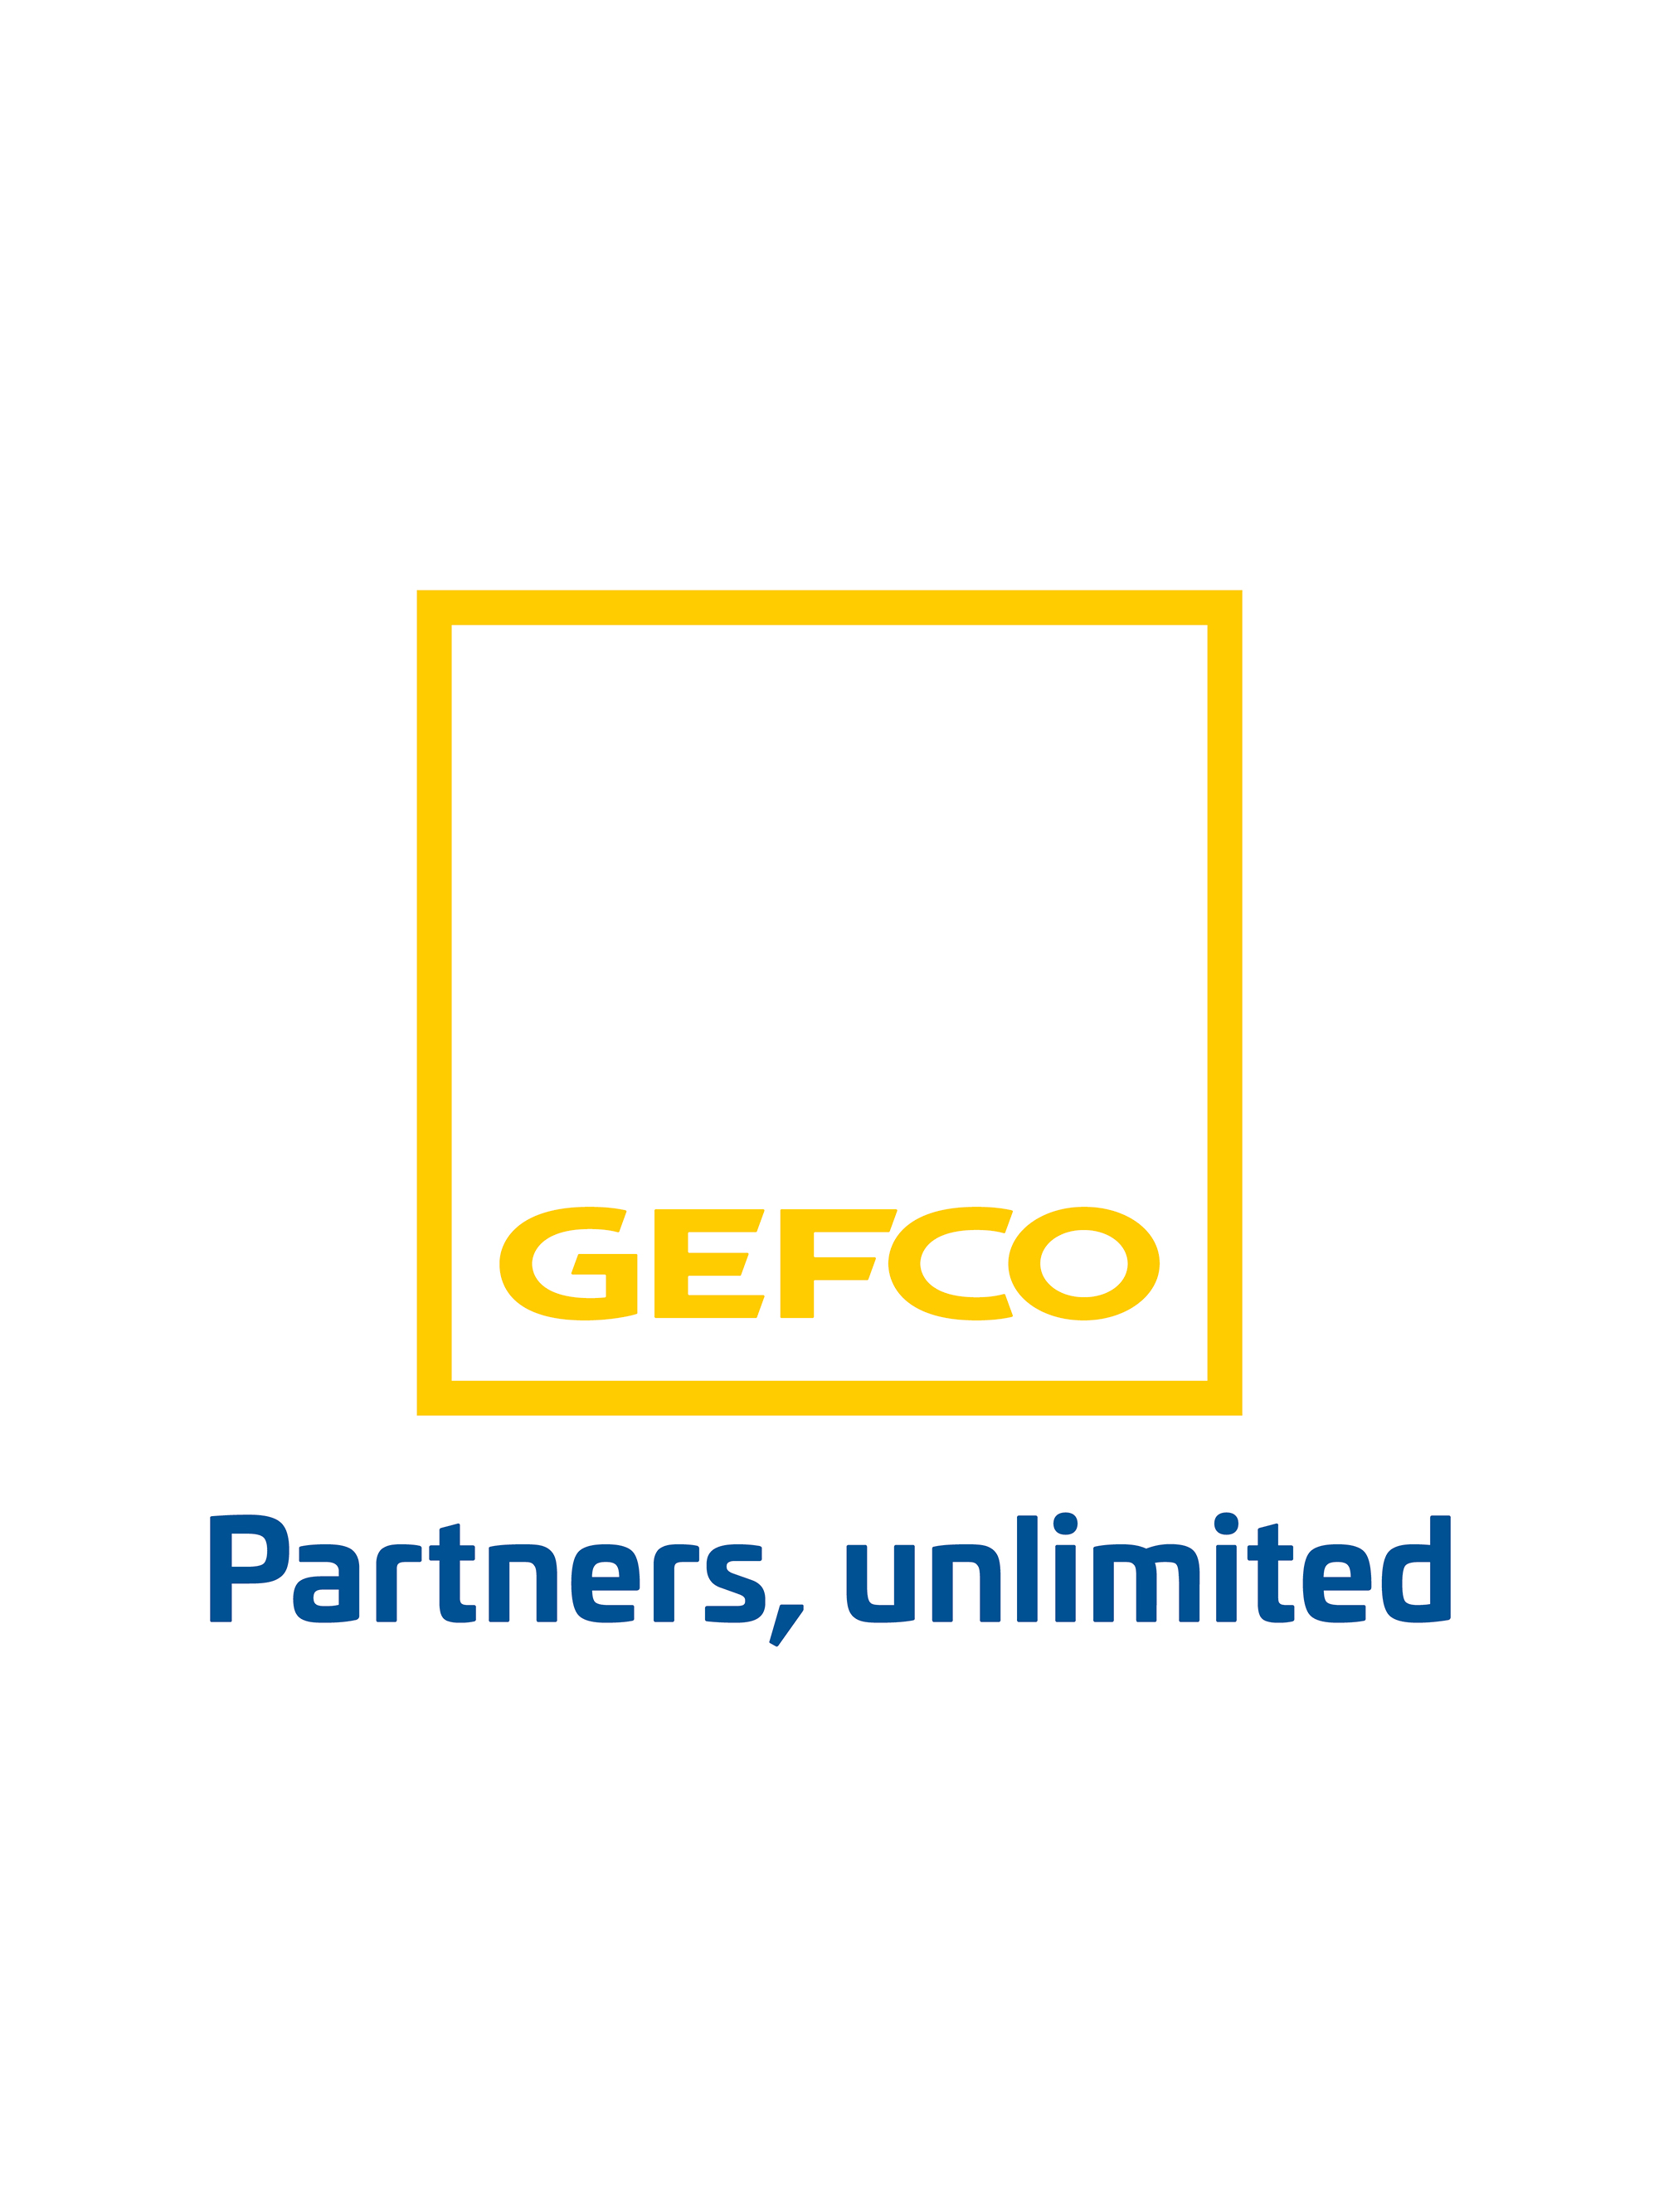 gefco_logo.jpg